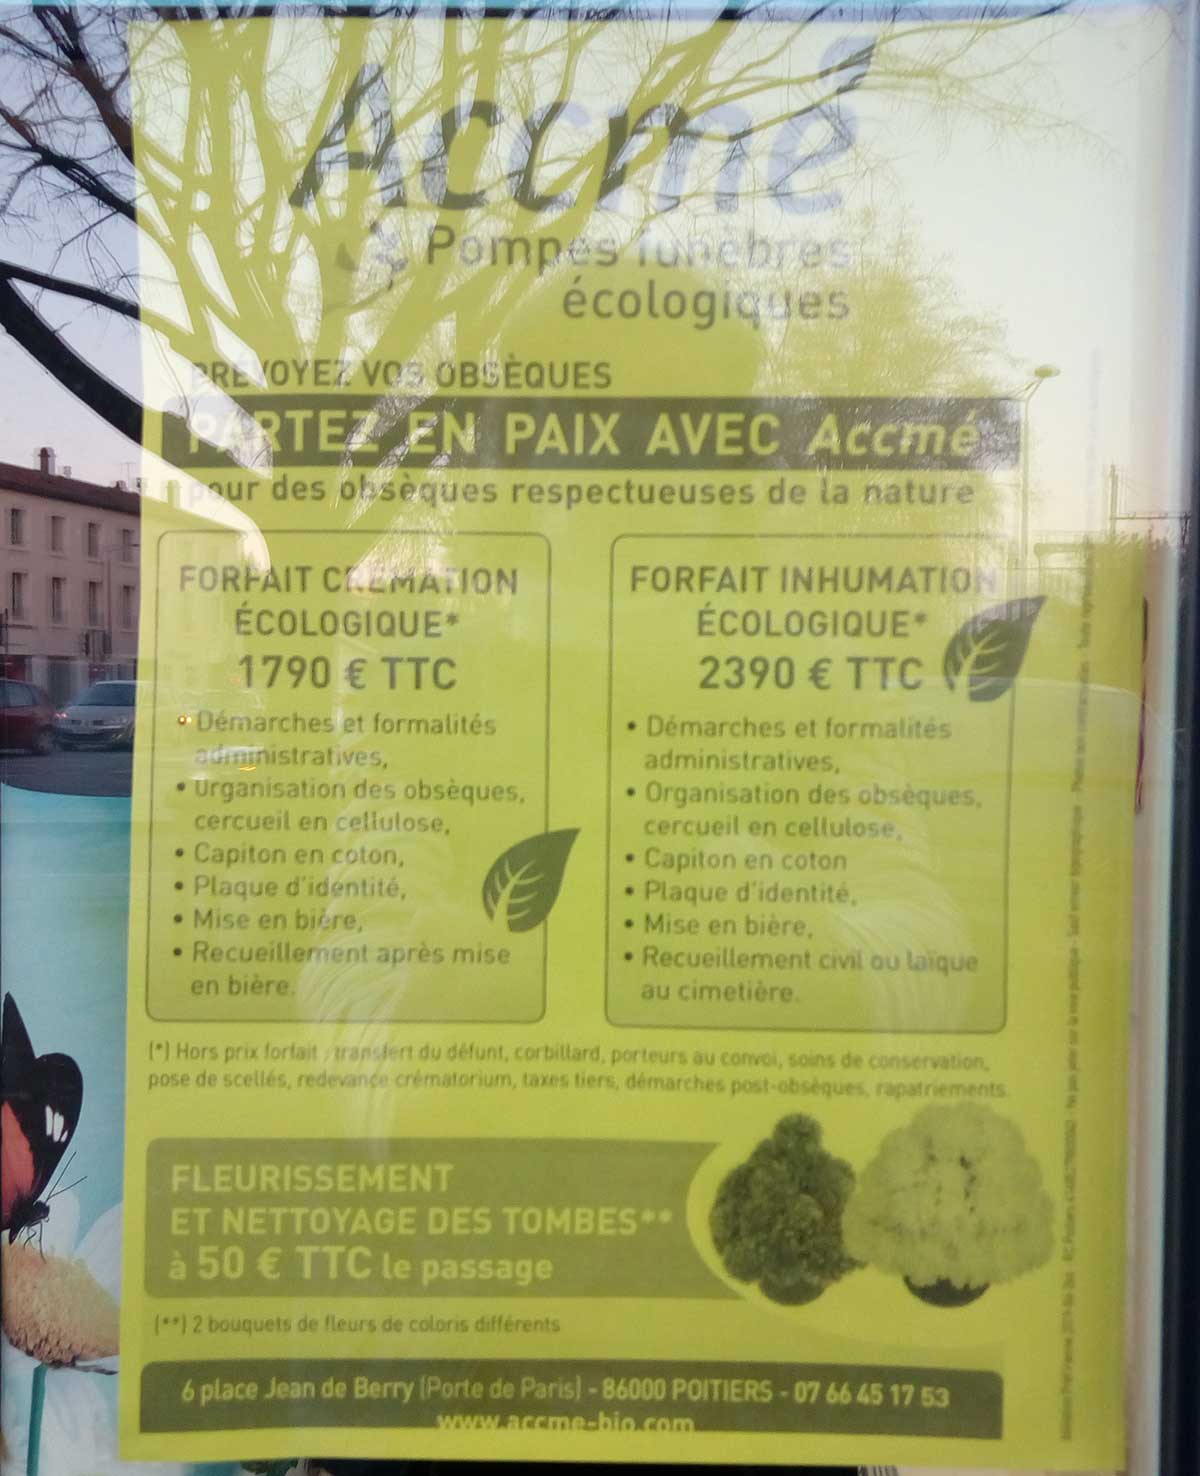 Pompes Funebres Ecologiques Poitiers